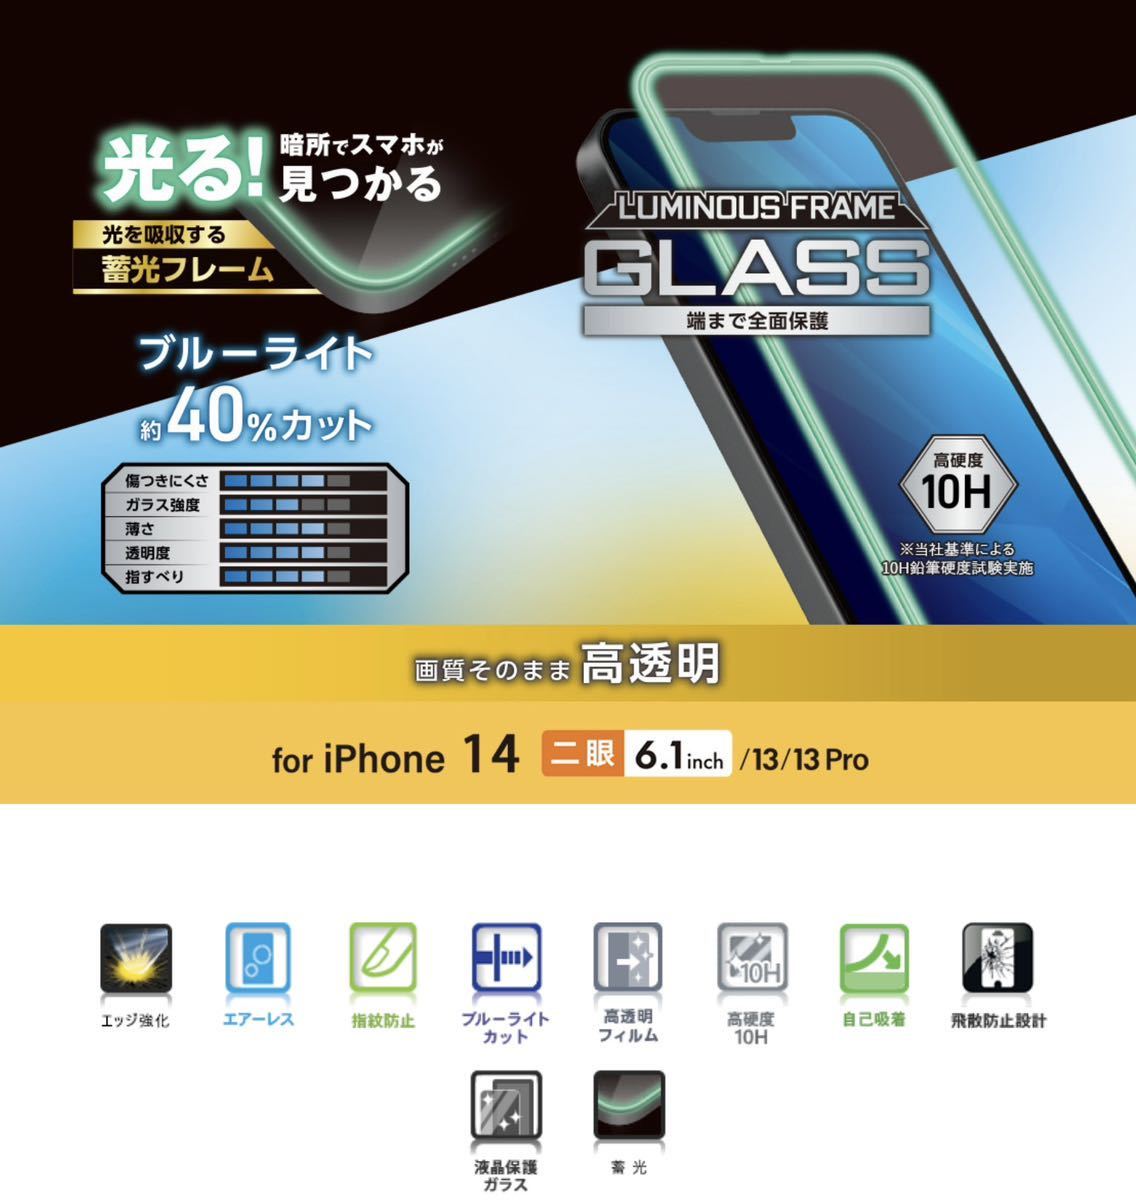 * Elecom iPhone14/13/13Pro тонировка стёкол пленкой 3D. свет рама есть голубой свет cut 019 ELECOM